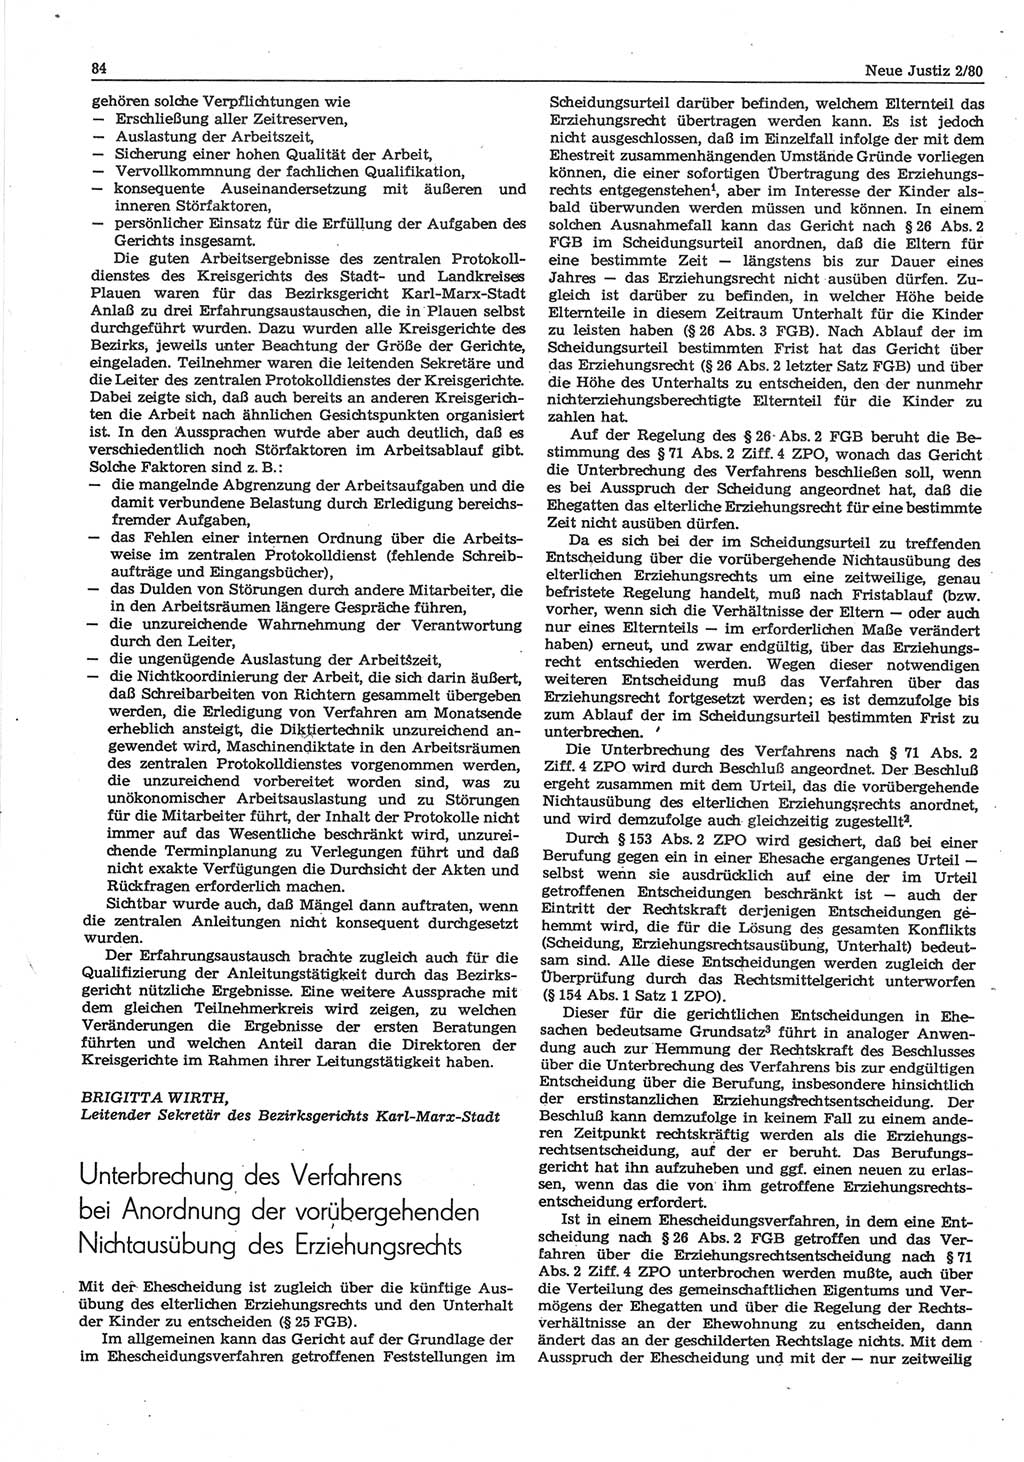 Neue Justiz (NJ), Zeitschrift für sozialistisches Recht und Gesetzlichkeit [Deutsche Demokratische Republik (DDR)], 34. Jahrgang 1980, Seite 84 (NJ DDR 1980, S. 84)